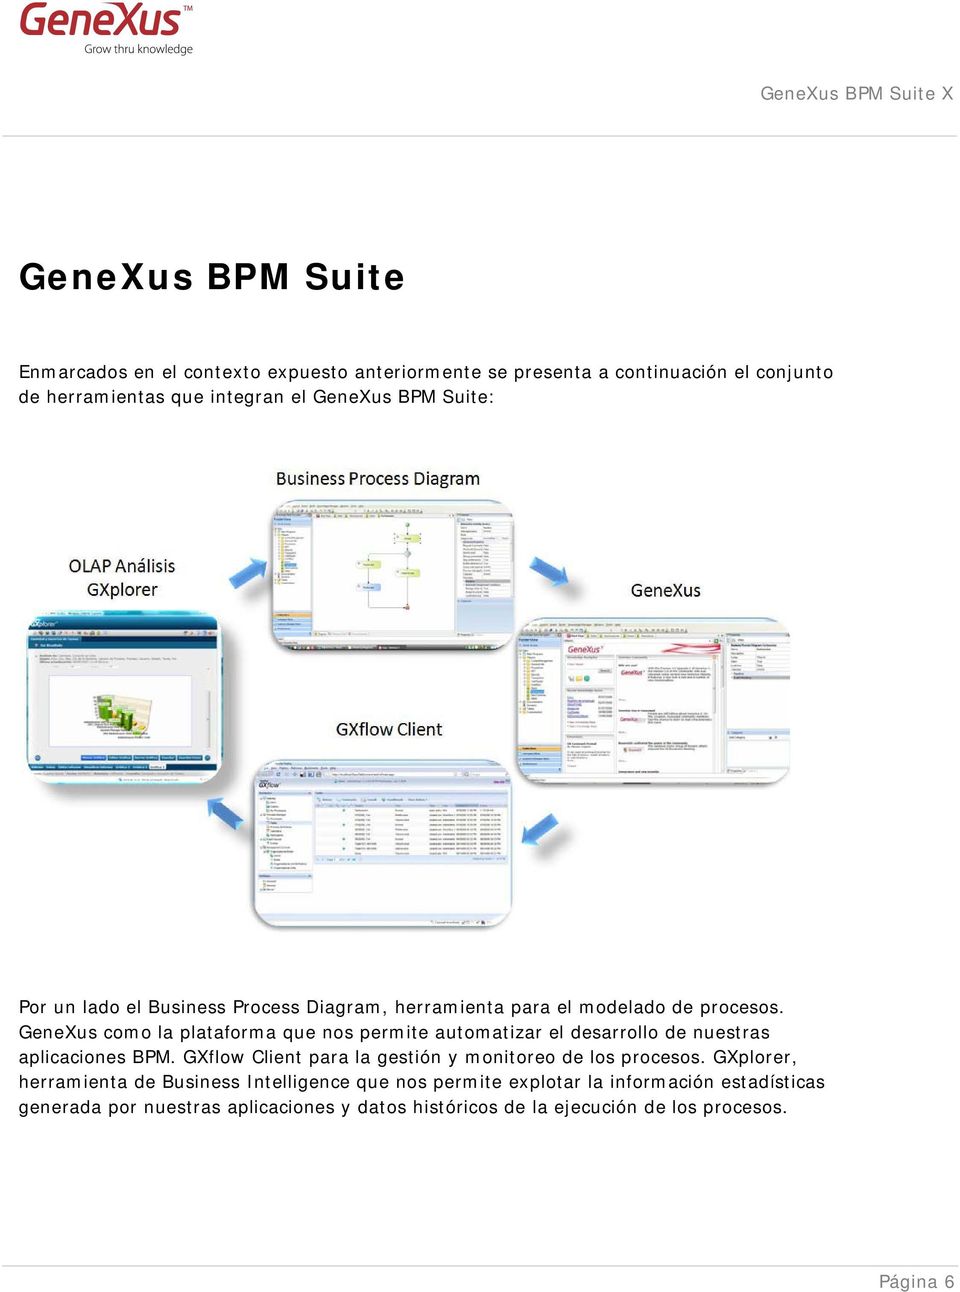 GeneXus como la plataforma que nos permite automatizar el desarrollo de nuestras aplicaciones BPM.